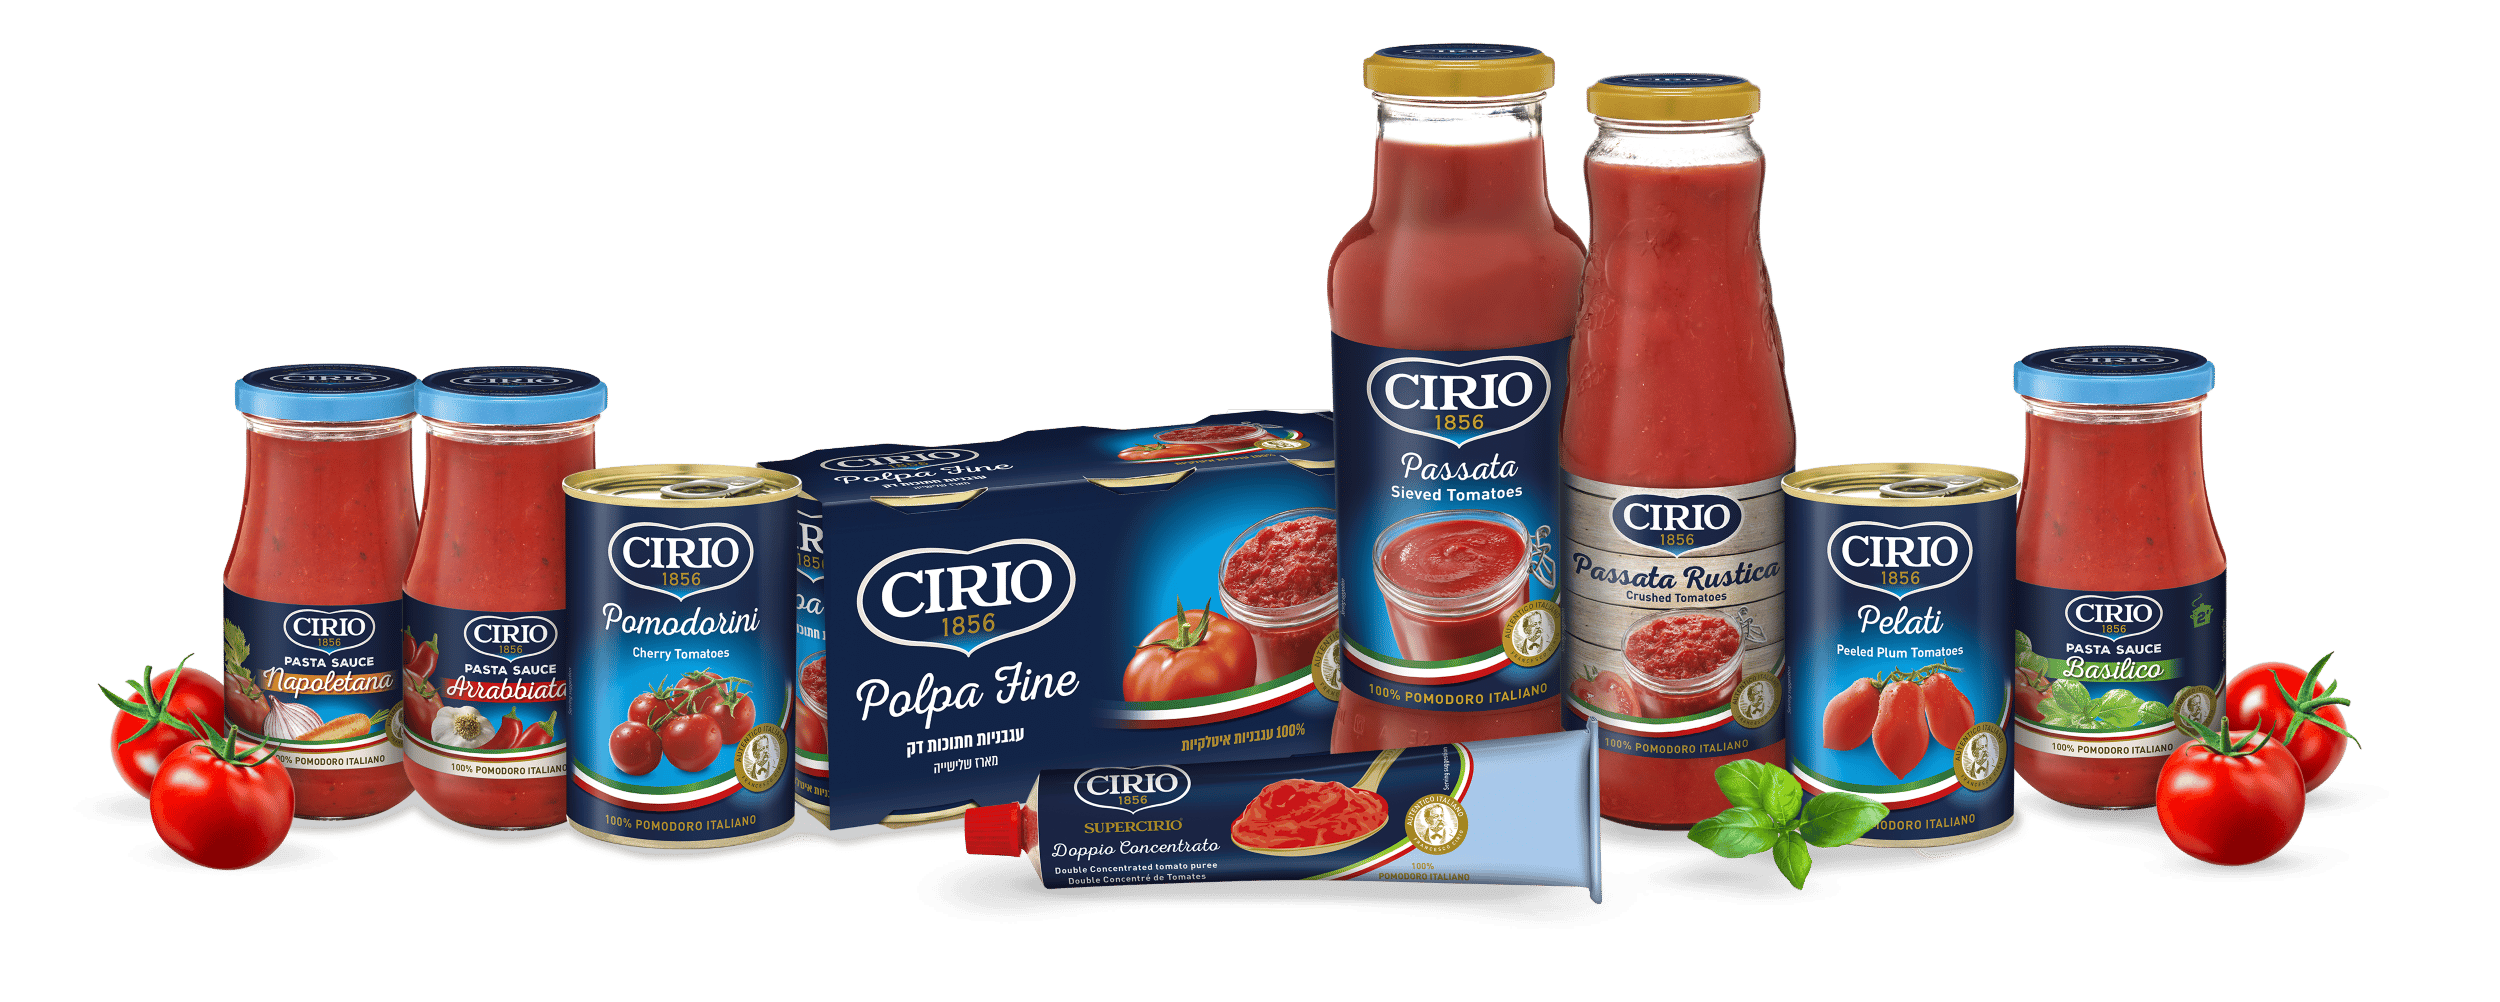 צ'יריו – מותג רטבי עגבניות איכותי איטלקי, משווק על ידי דיפלומט. צילום יחצ חול